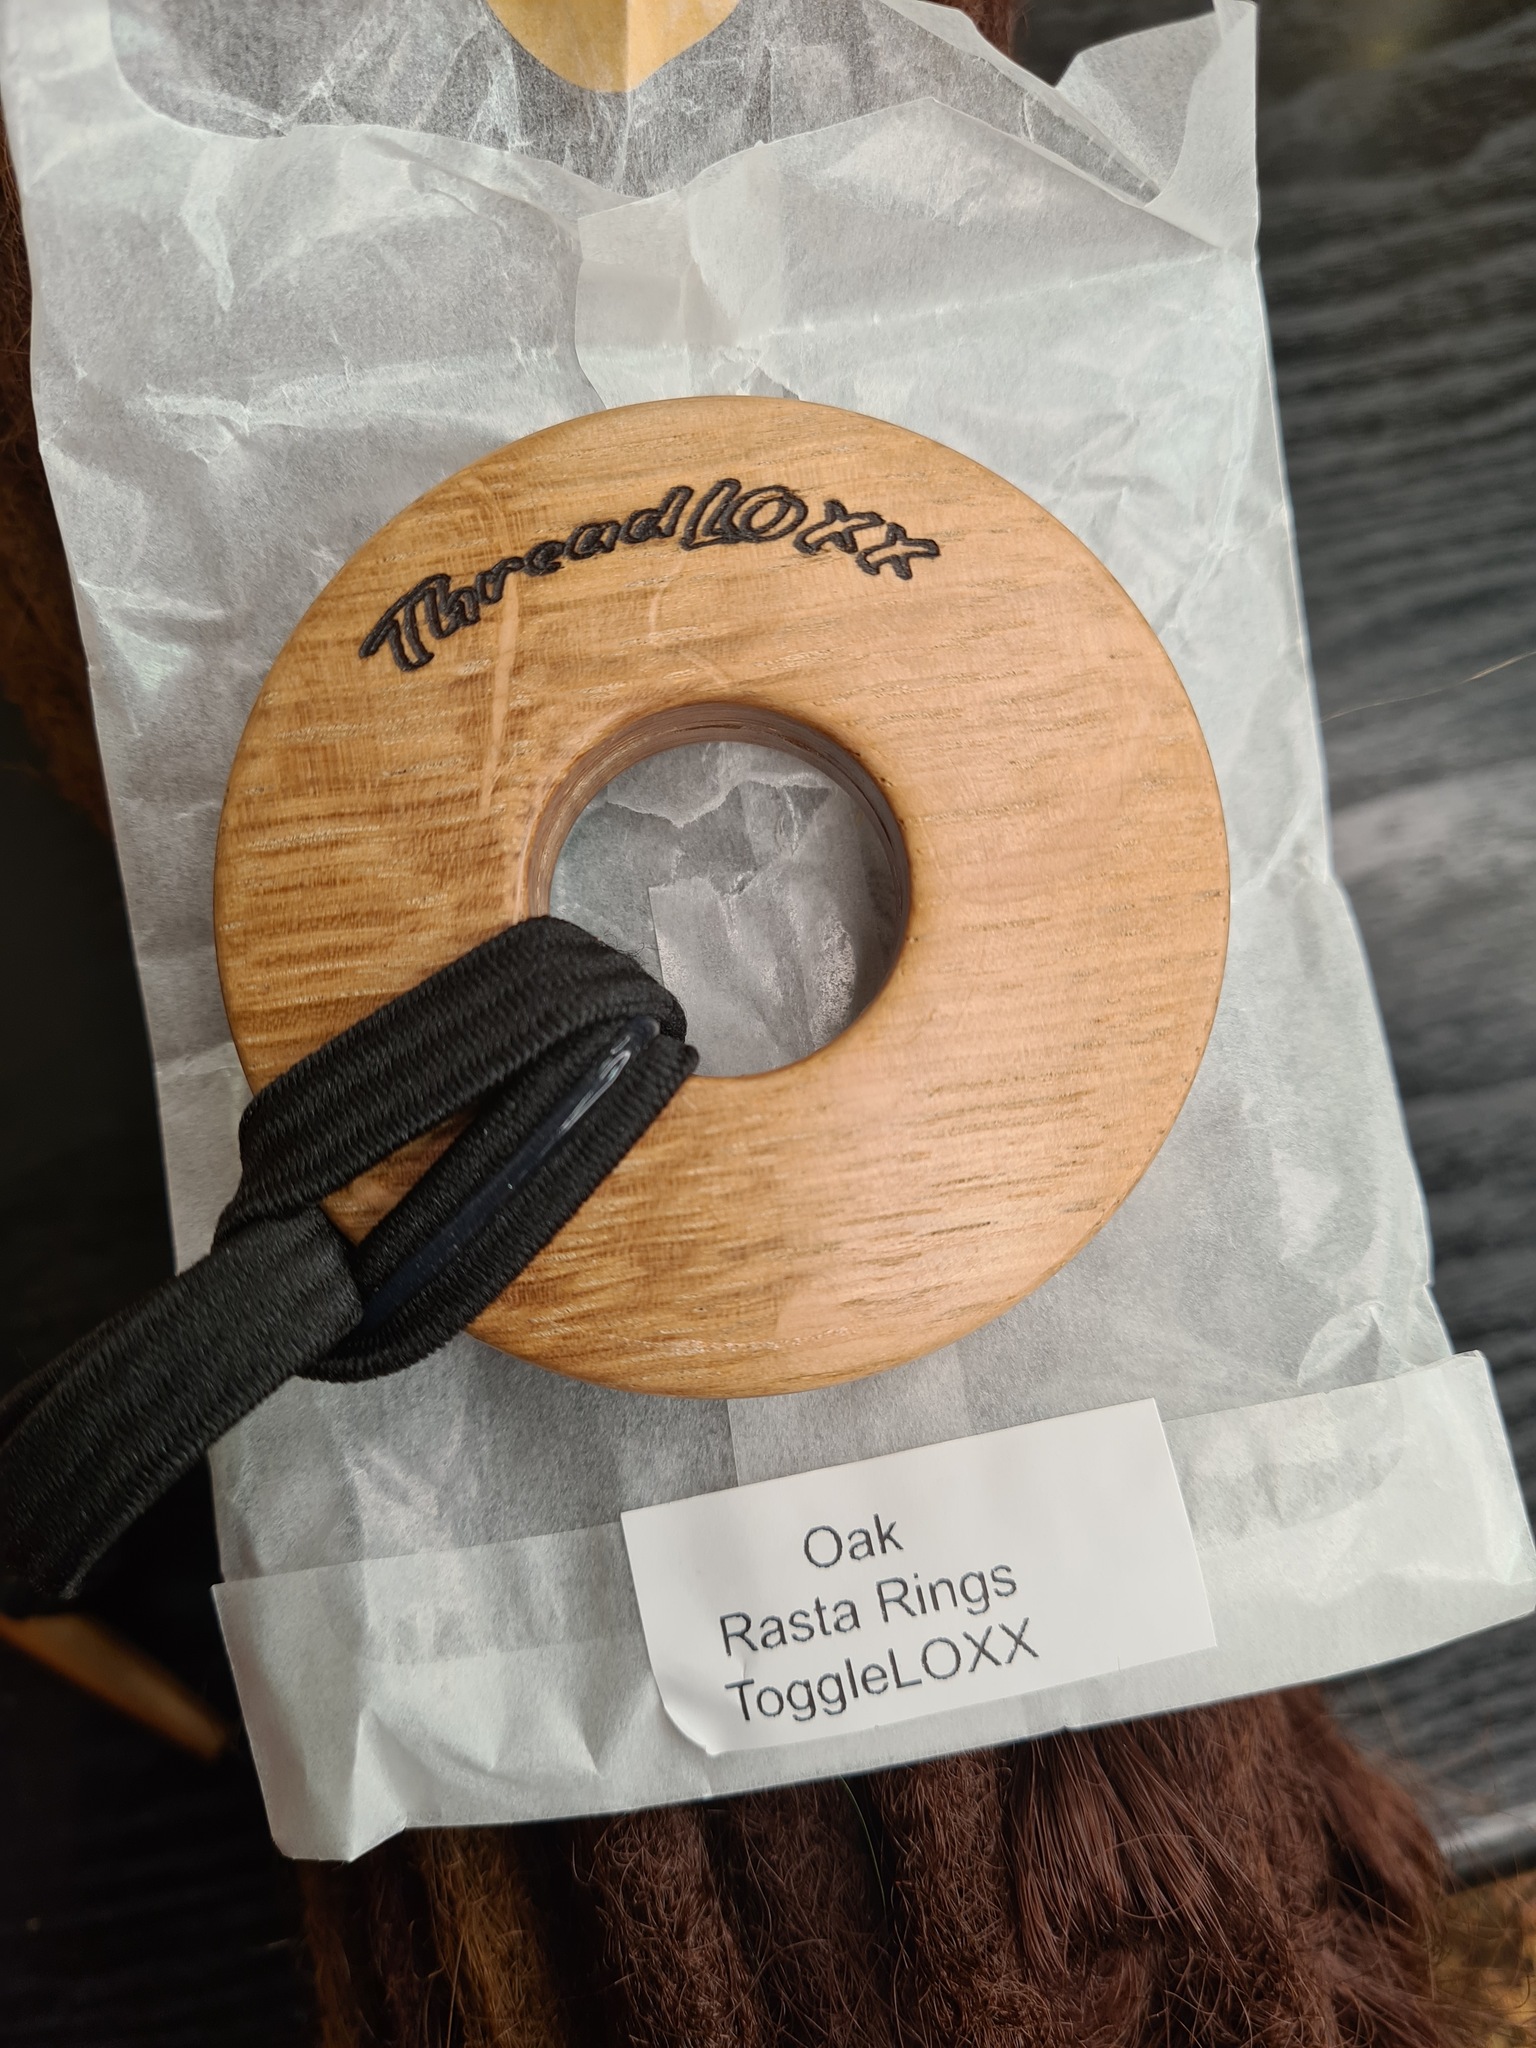 ToggleLOXX - Hårband "Oak Rasta Rings"